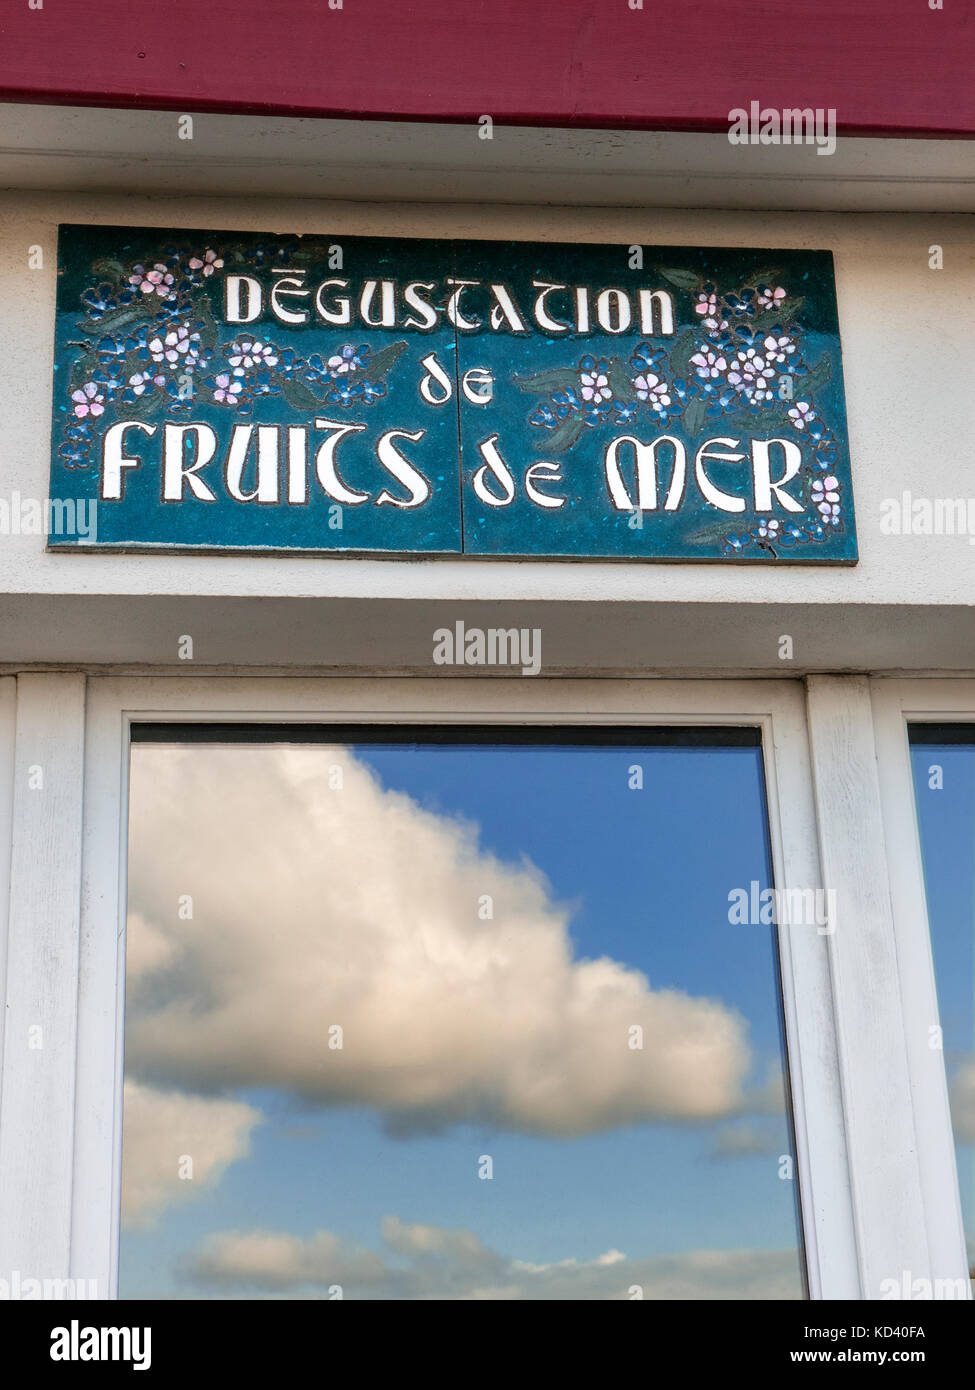 Restaurant rustique française 'degustation publicité signe de fruits de mer" (dégustation des fruits de la mer) avec ciel bleu et le port compte dans window Banque D'Images